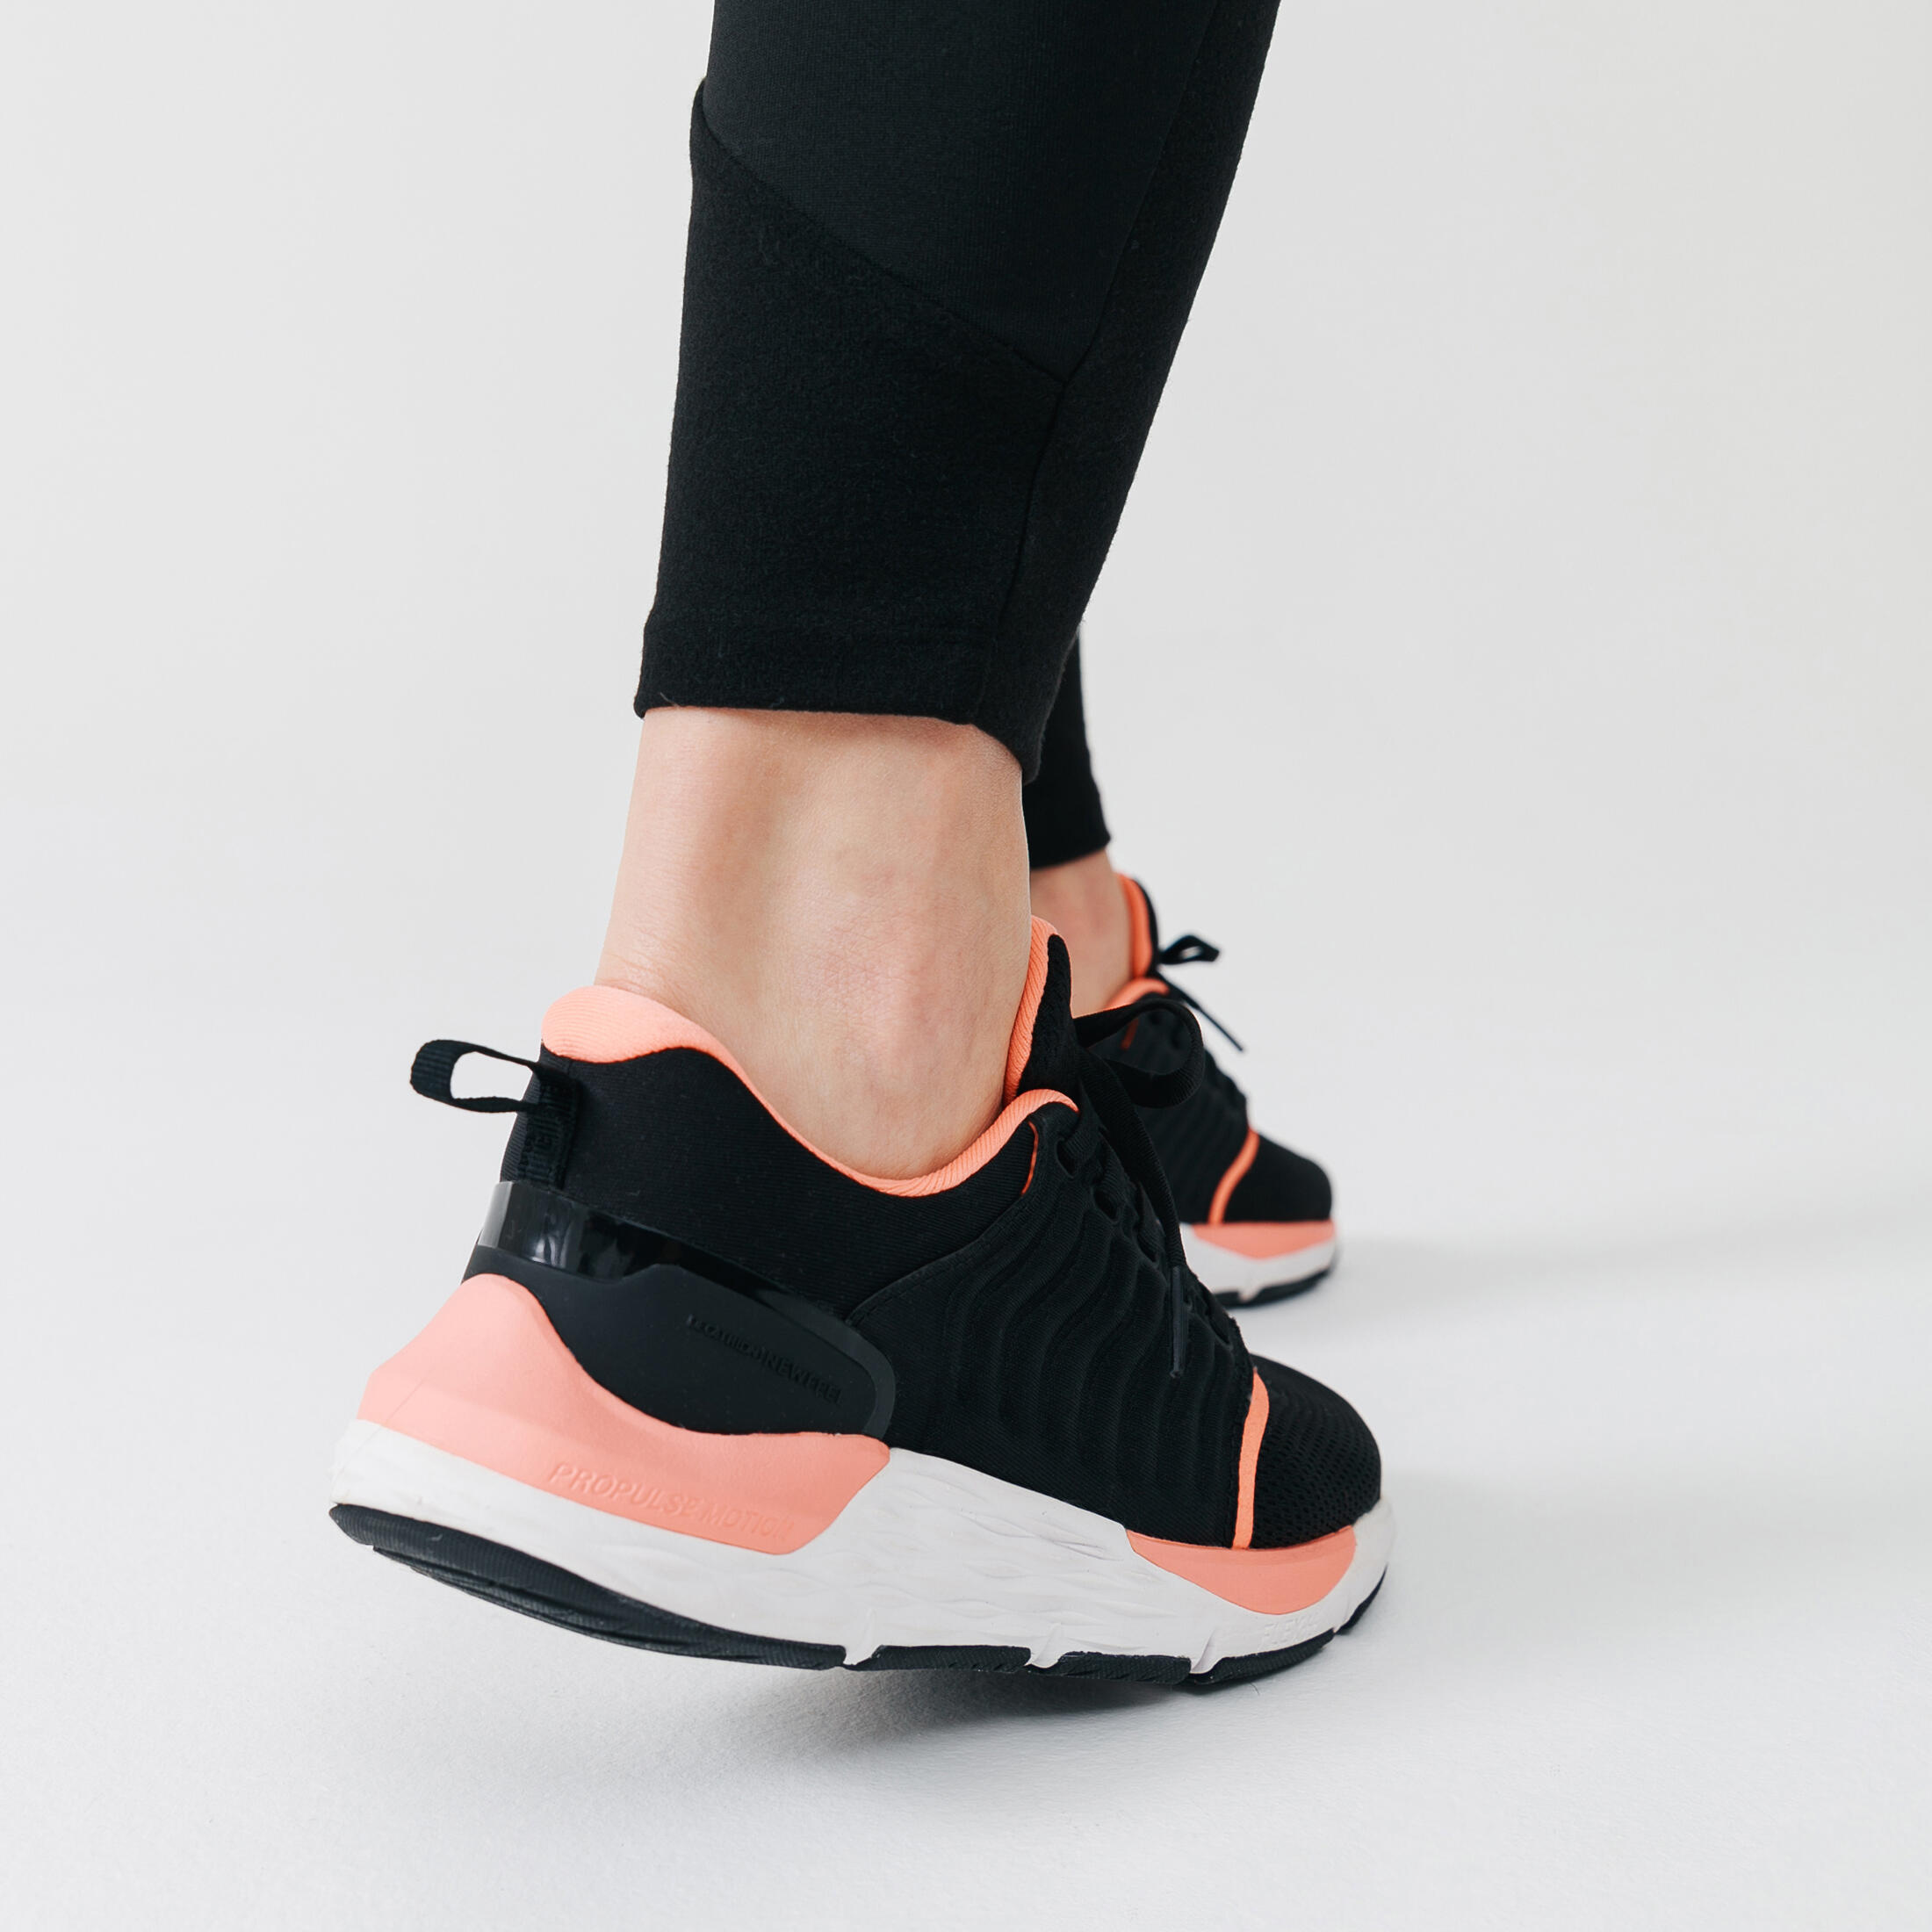 Women's Fitness Walking Shoes Sportwalk Comfort - black 9/9